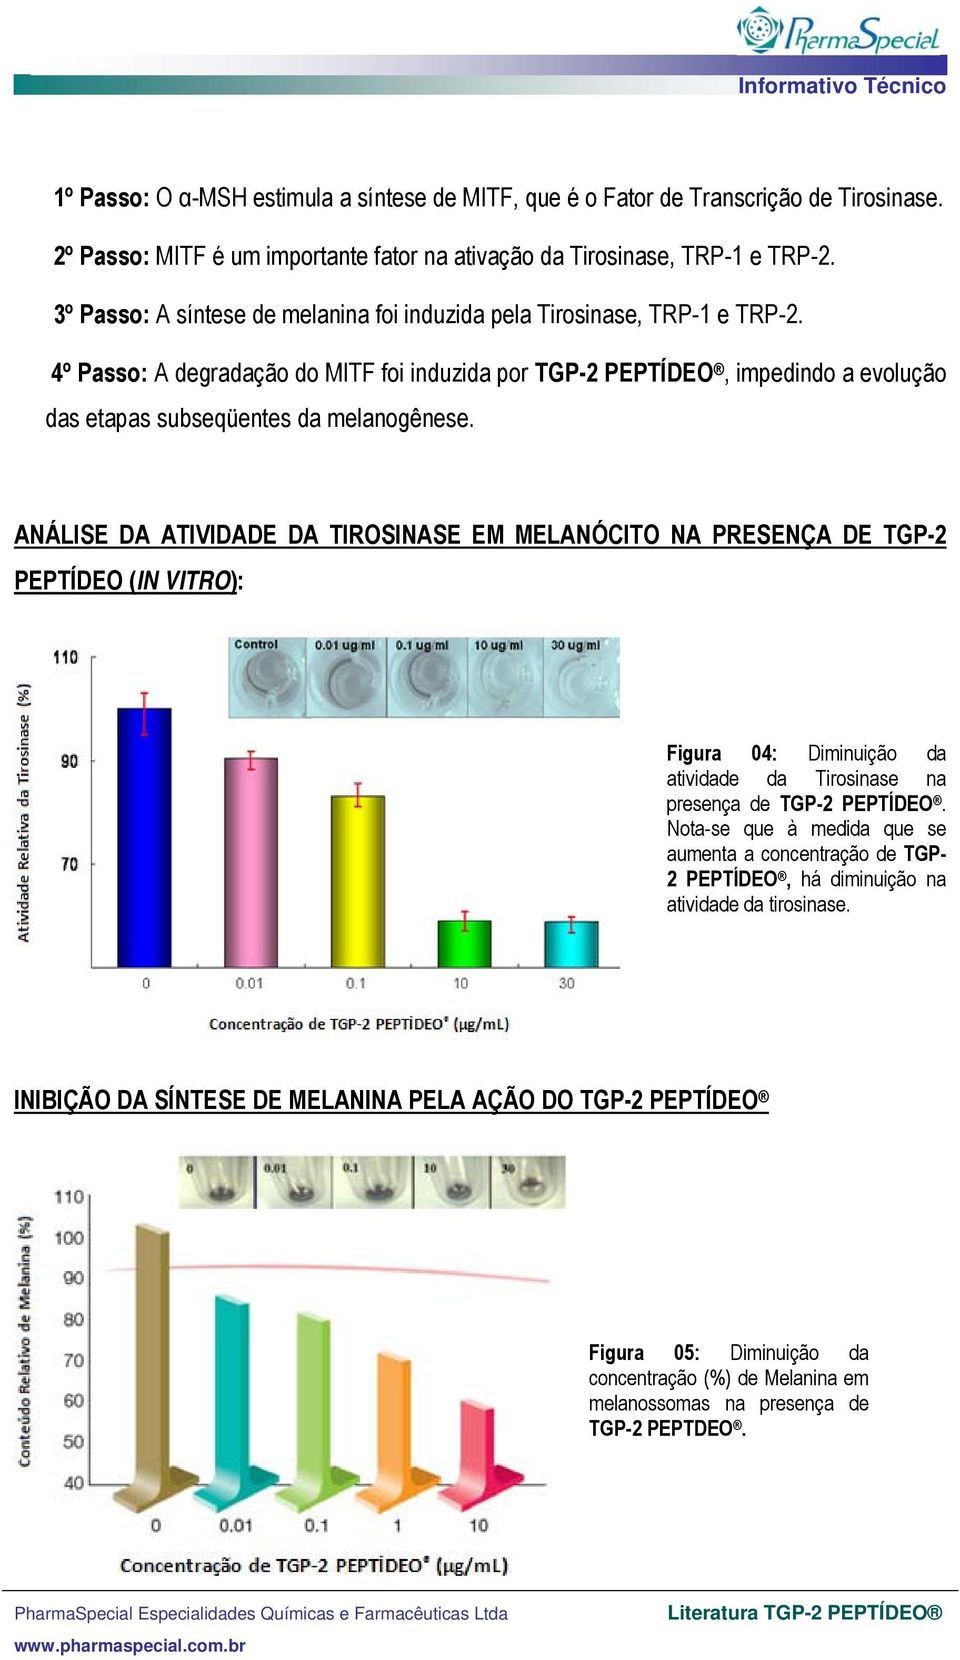 4º Passo: A degradação do MITF foi induzida por TGP-2 PEPTÍDEO, impedindo a evolução das etapas subseqüentes da melanogênese.